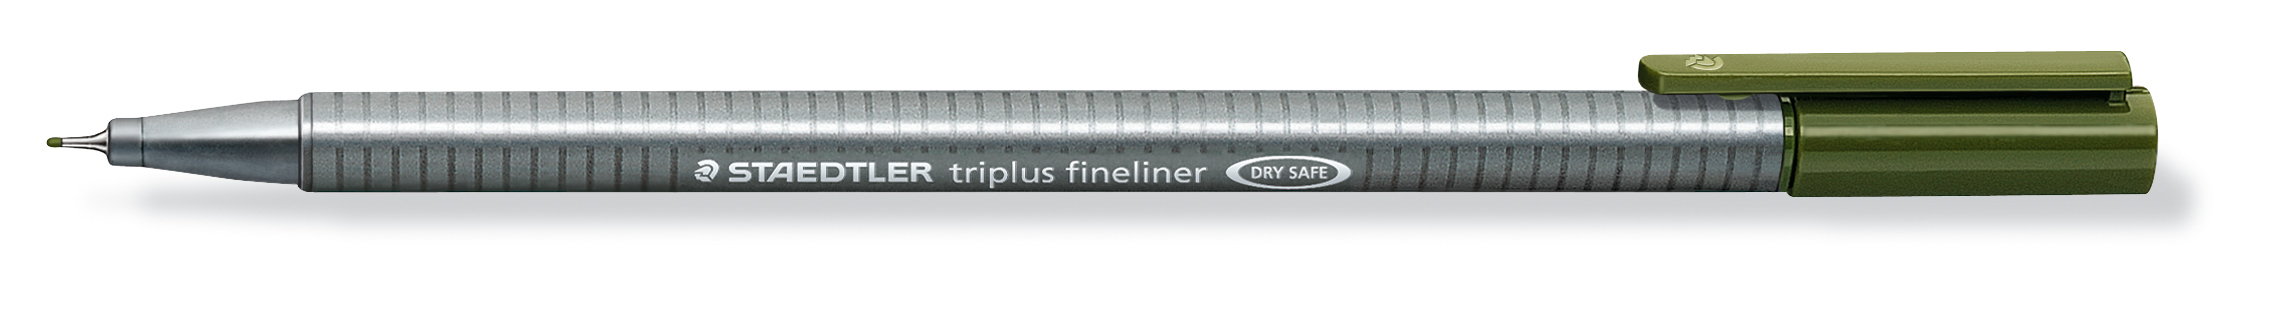 STAEDTLER Triplus Fineliner 0,3mm 334-57 oliv oliv